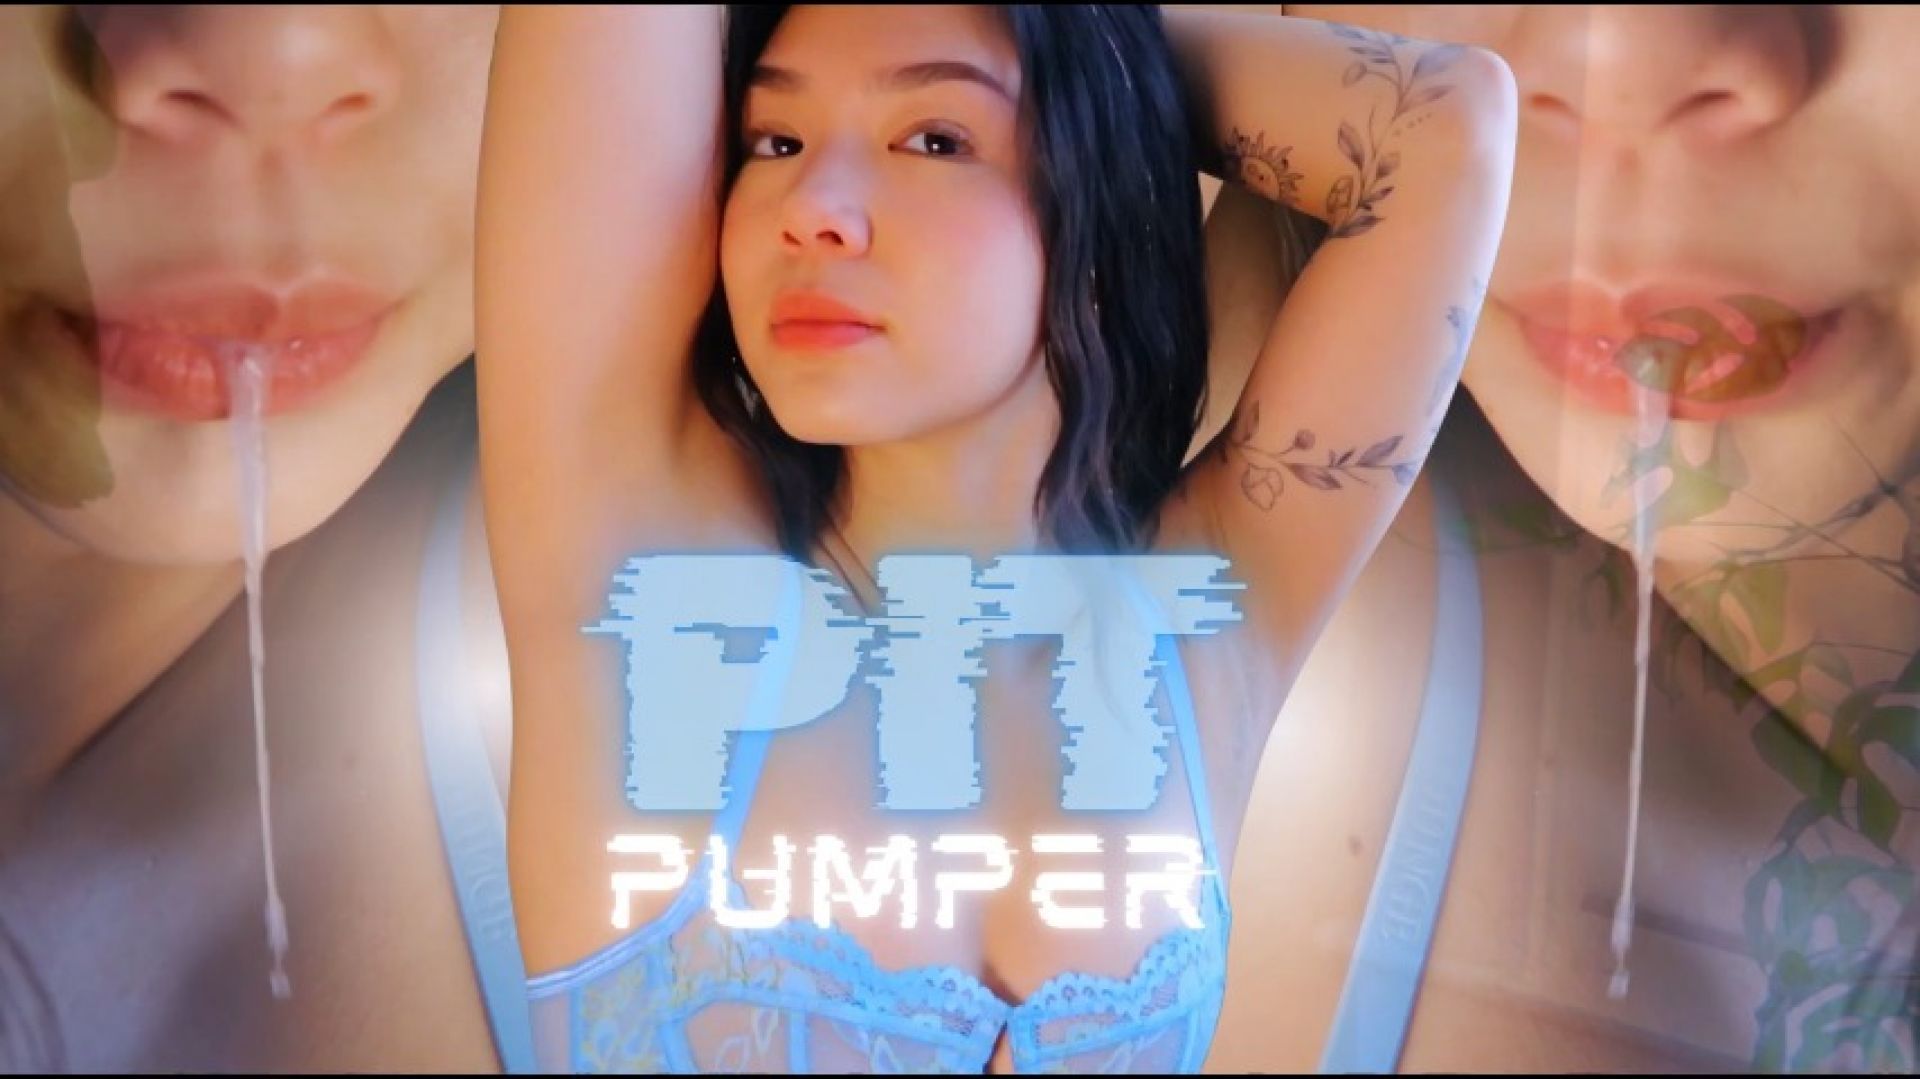 Pit Pumper